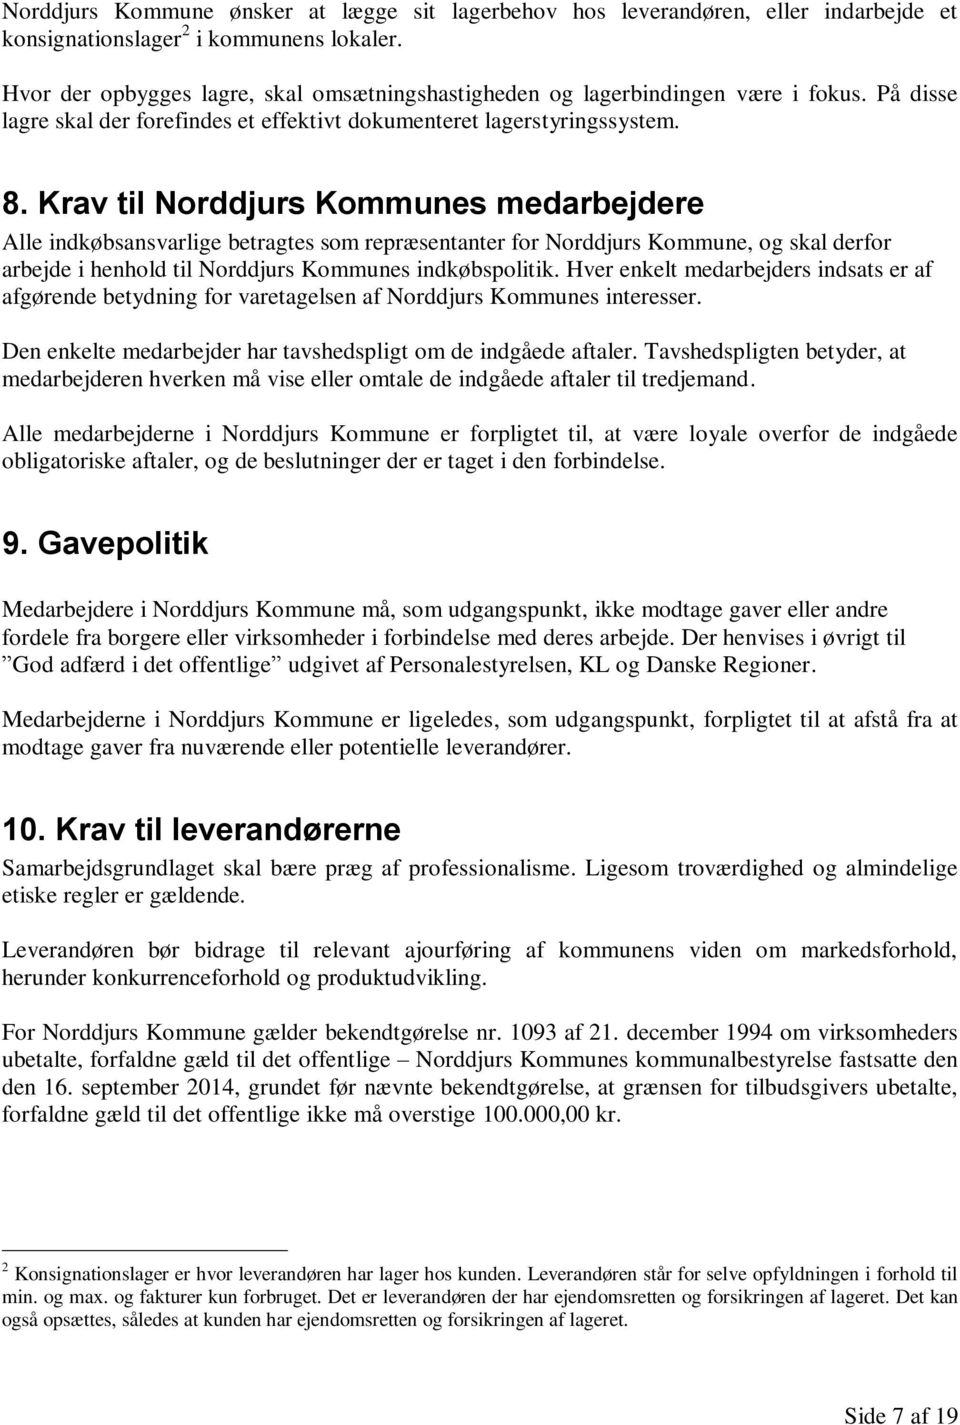 Krav til Norddjurs Kommunes medarbejdere Alle indkøbsansvarlige betragtes som repræsentanter for Norddjurs Kommune, og skal derfor arbejde i henhold til Norddjurs Kommunes indkøbspolitik.